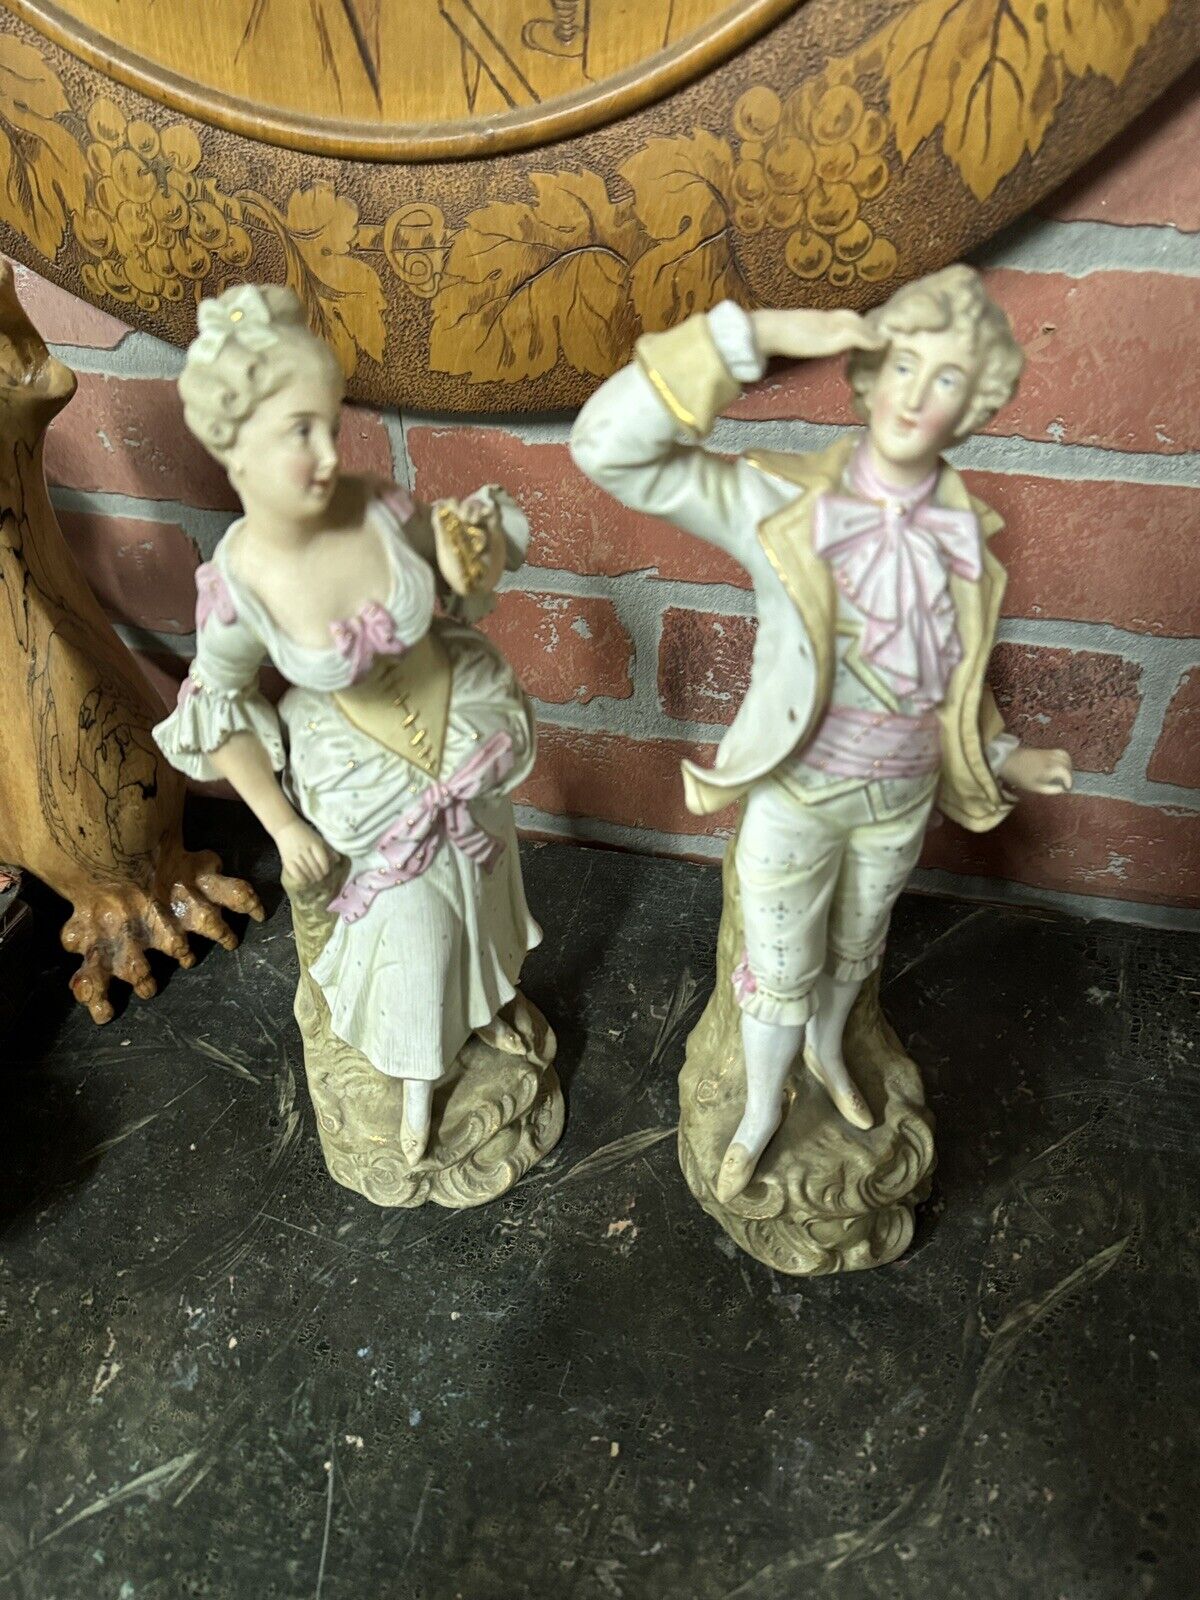 Pair of figurines ceramic porcelain Austria 1880s90 antique . 